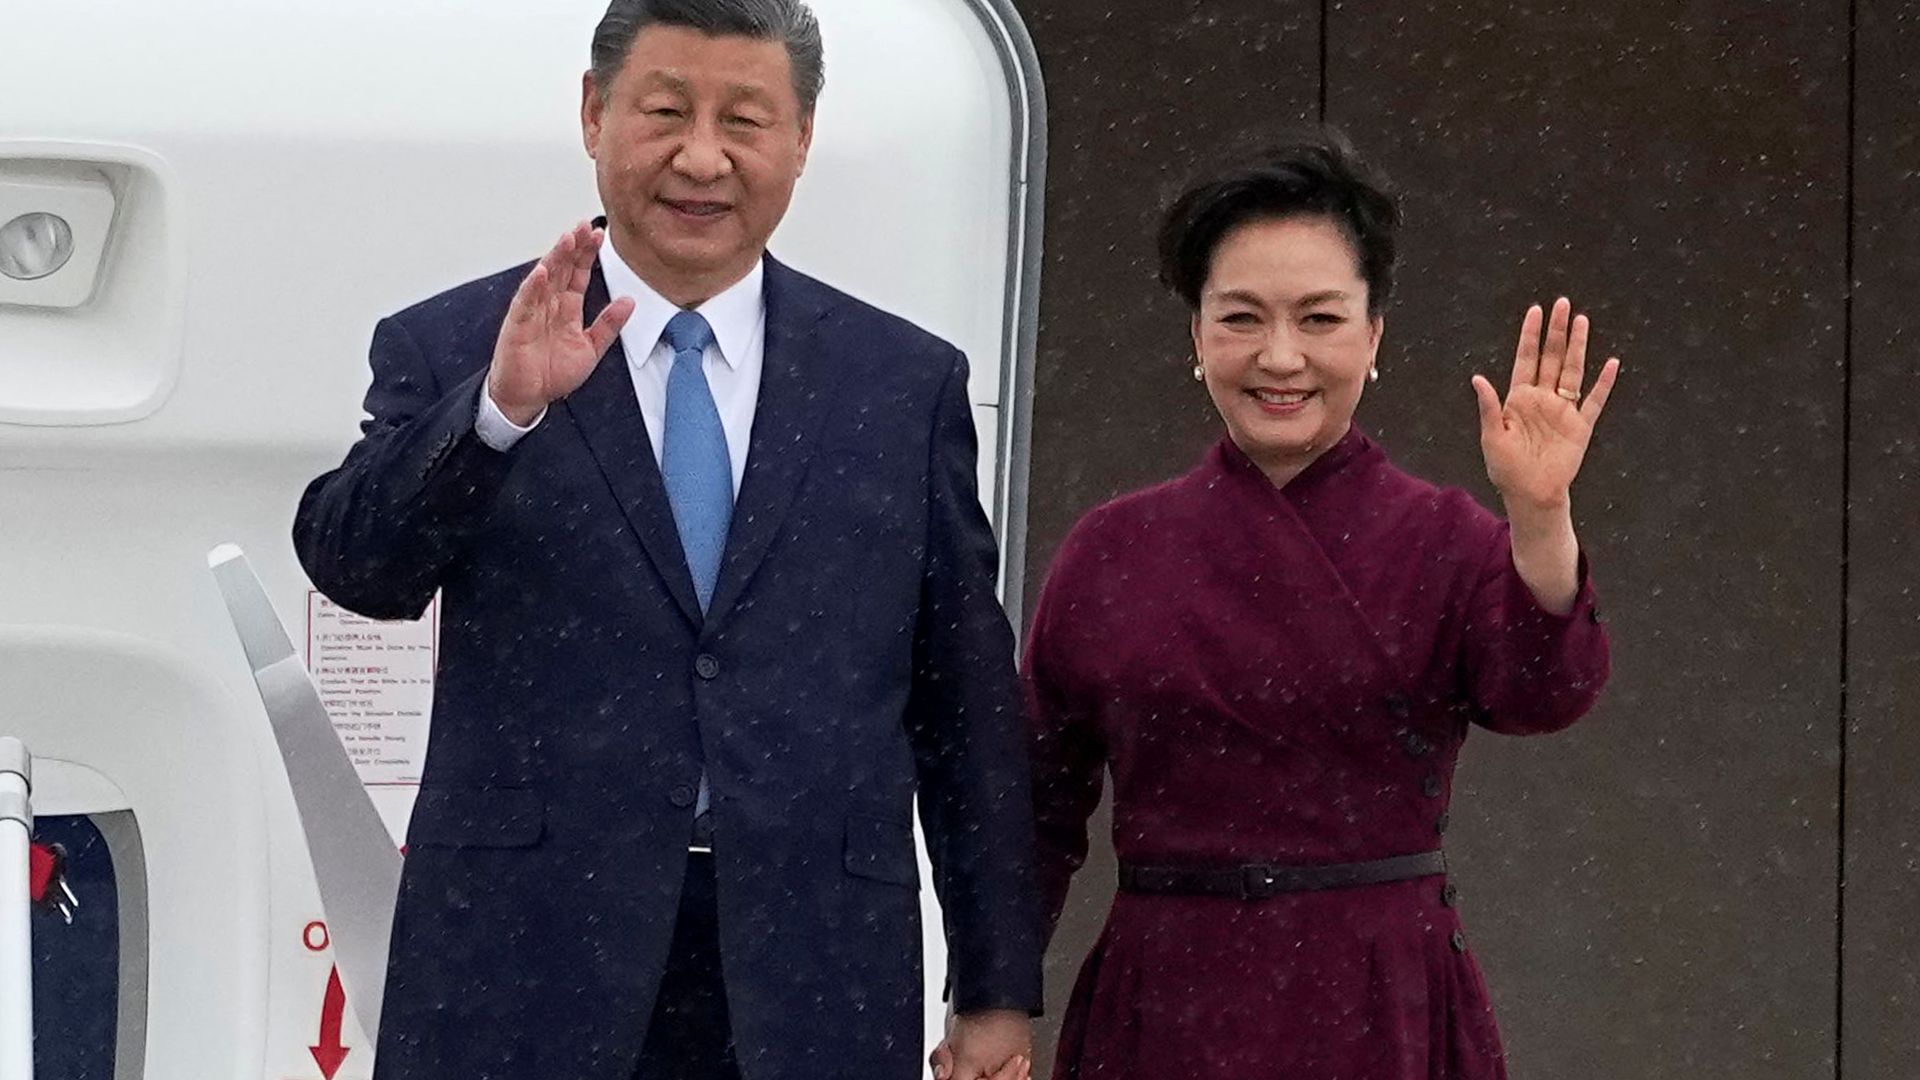 Tough talks ahead as China's president touches down for European trip